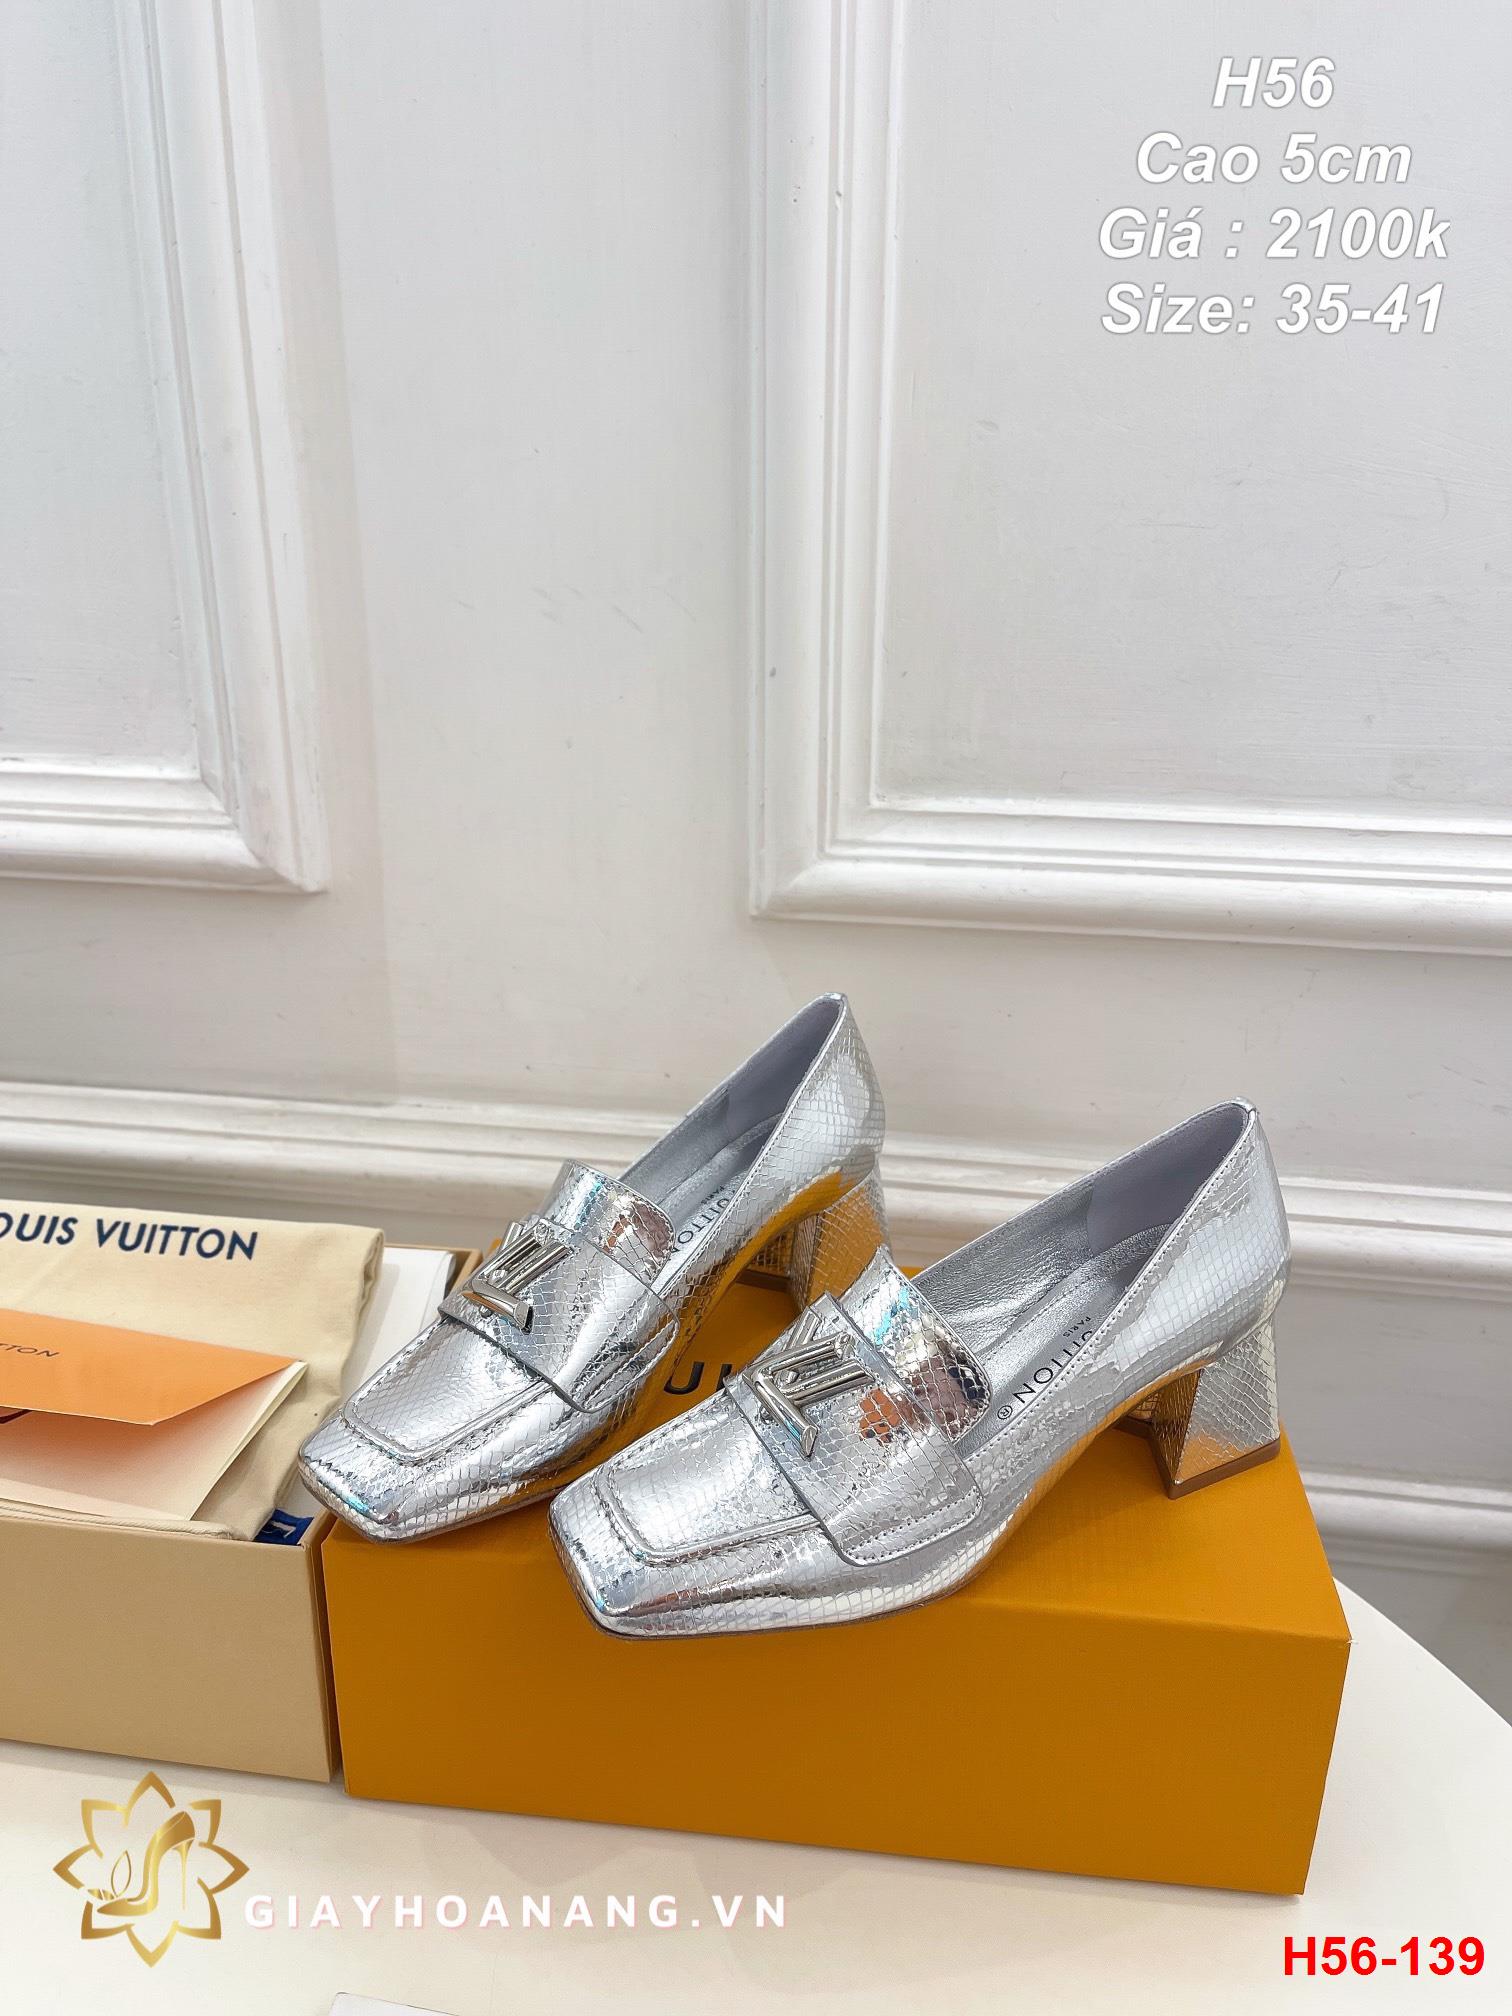 H56-139 Louis Vuitton giày cao 5cm siêu cấp